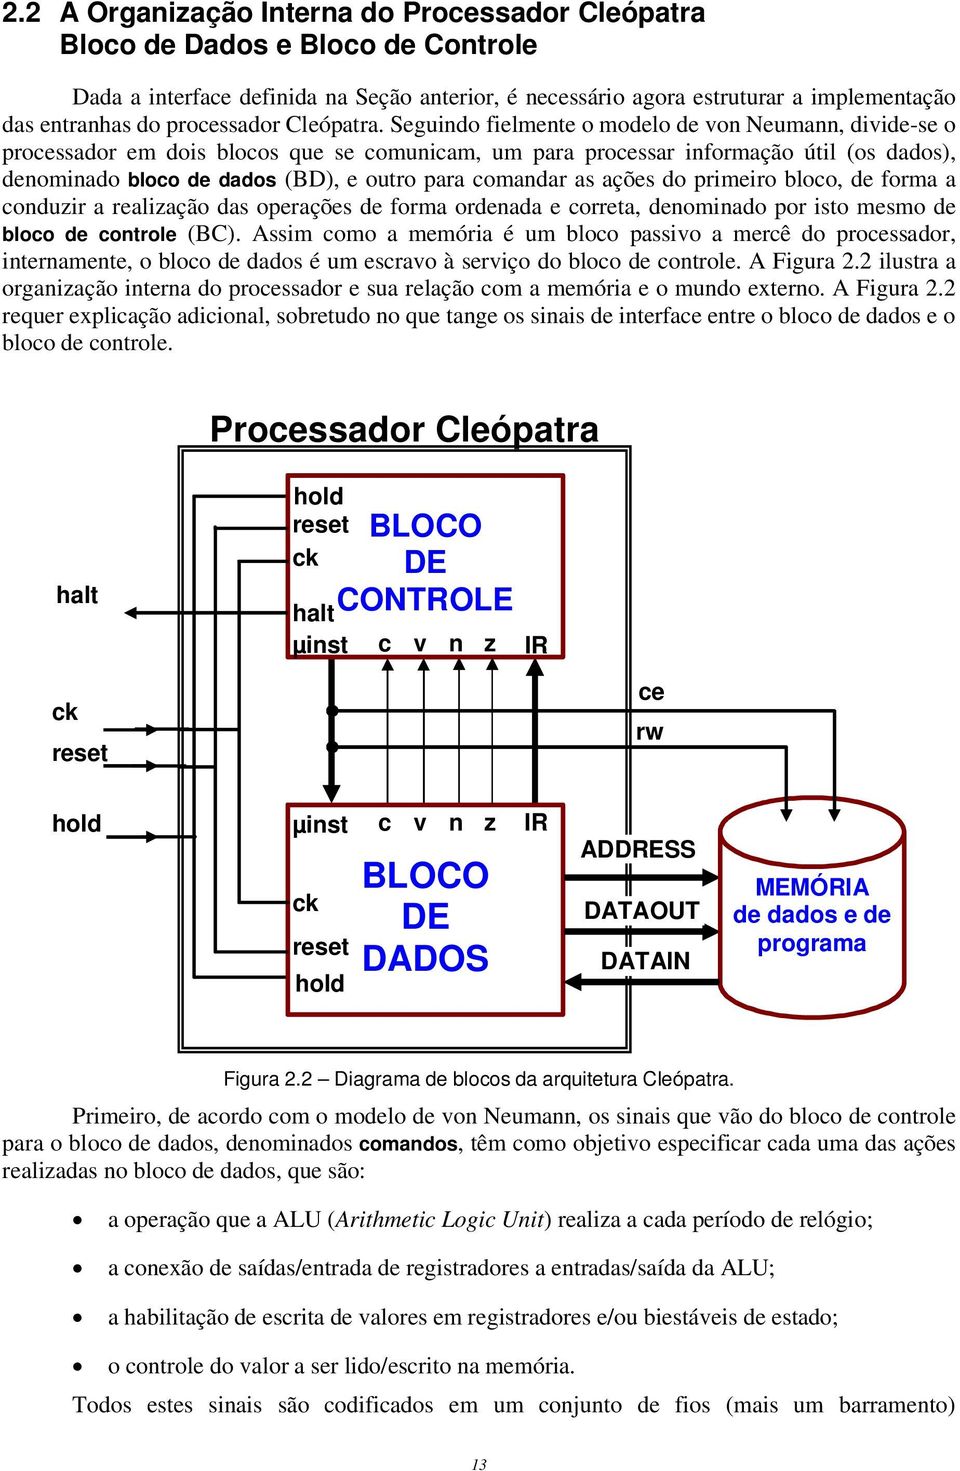 Seguindo fielmente o modelo de von Neumann, divide-se o processador em dois blocos que se comunicam, um para processar informação útil (os dados), denominado bloco de dados (BD), e outro para